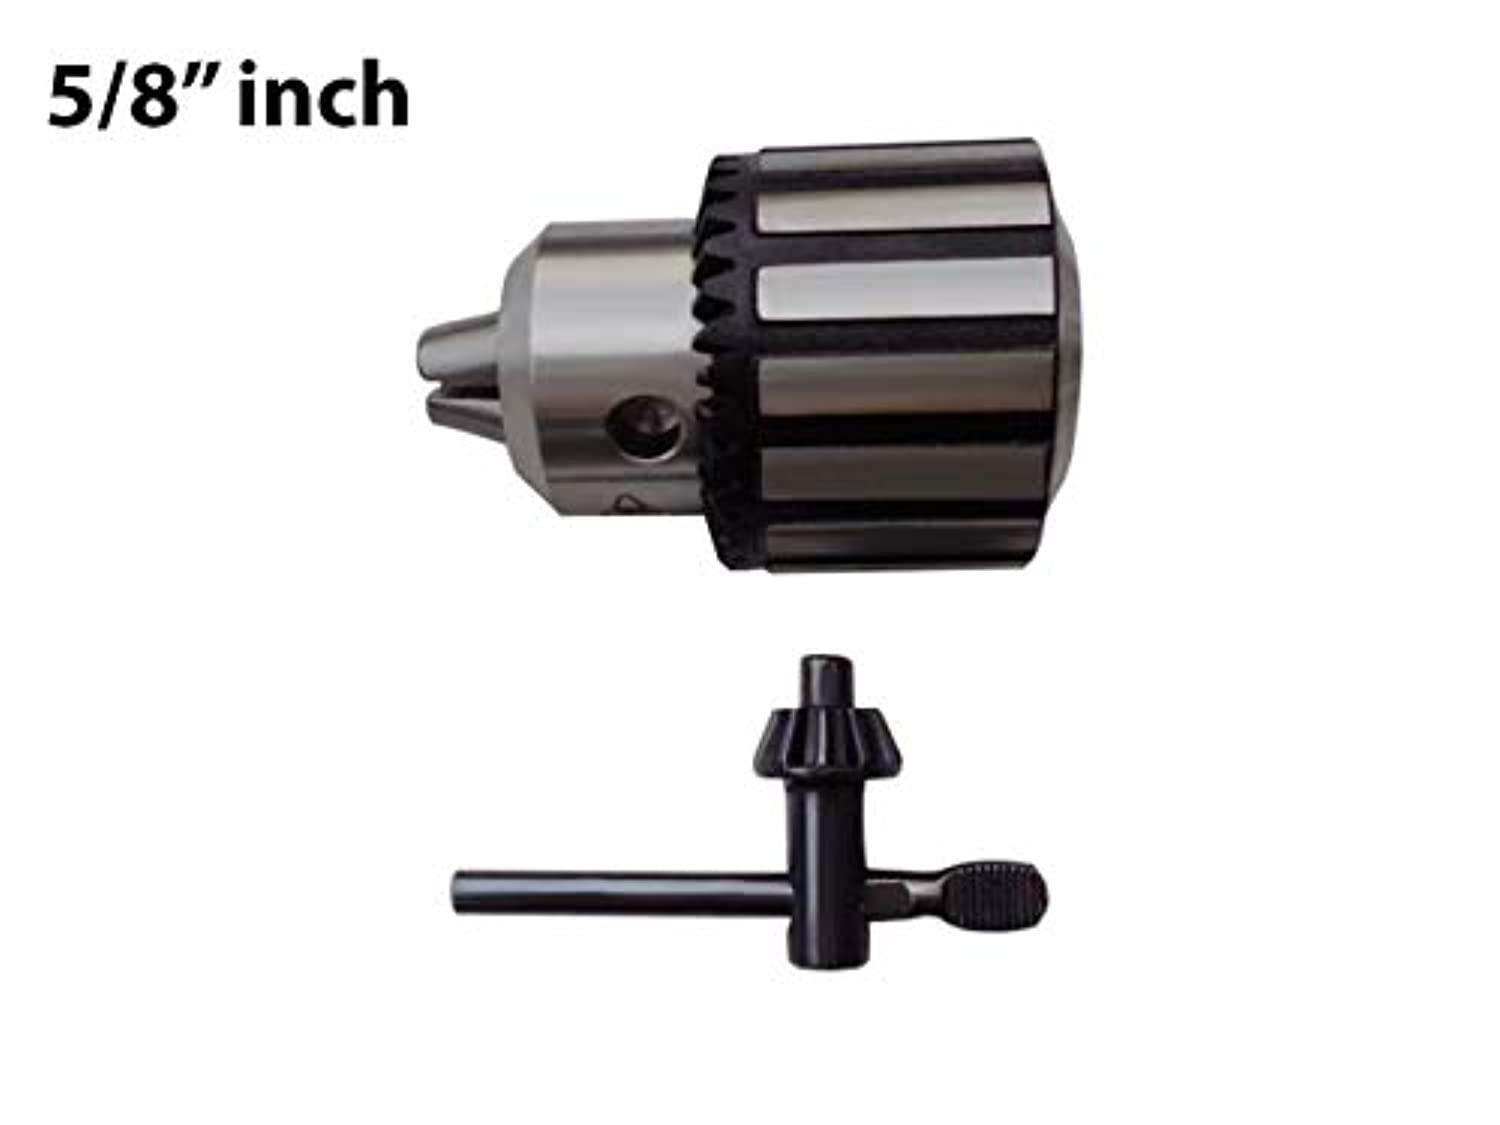 DNLK drill press chuck fits - jet 2135cnq103 drill press - 5/8 inch heavy duty keyless drill chuck - replacement drill chuck - mad